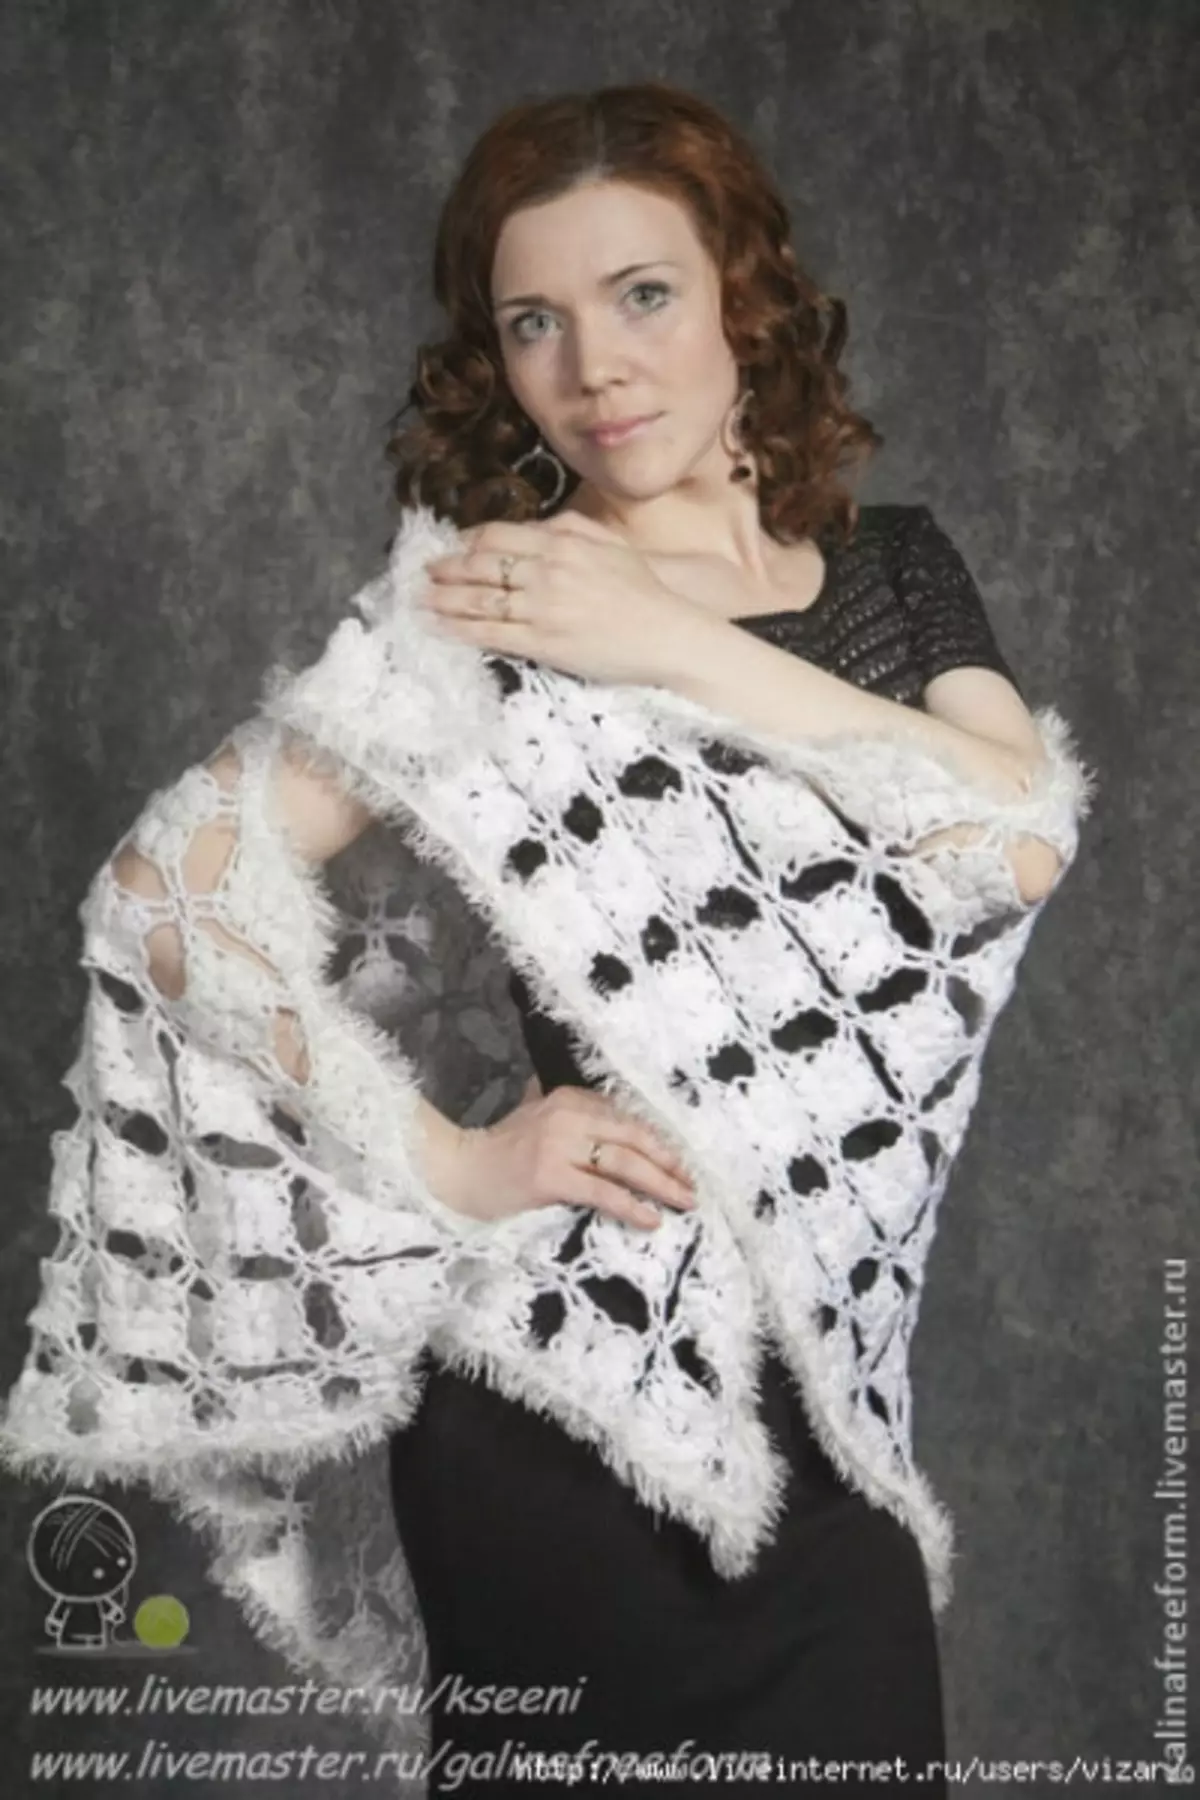 White Crochet Shawl ine brushes: Diagram uye tsananguro nezvidzidzo zvevhidhiyo